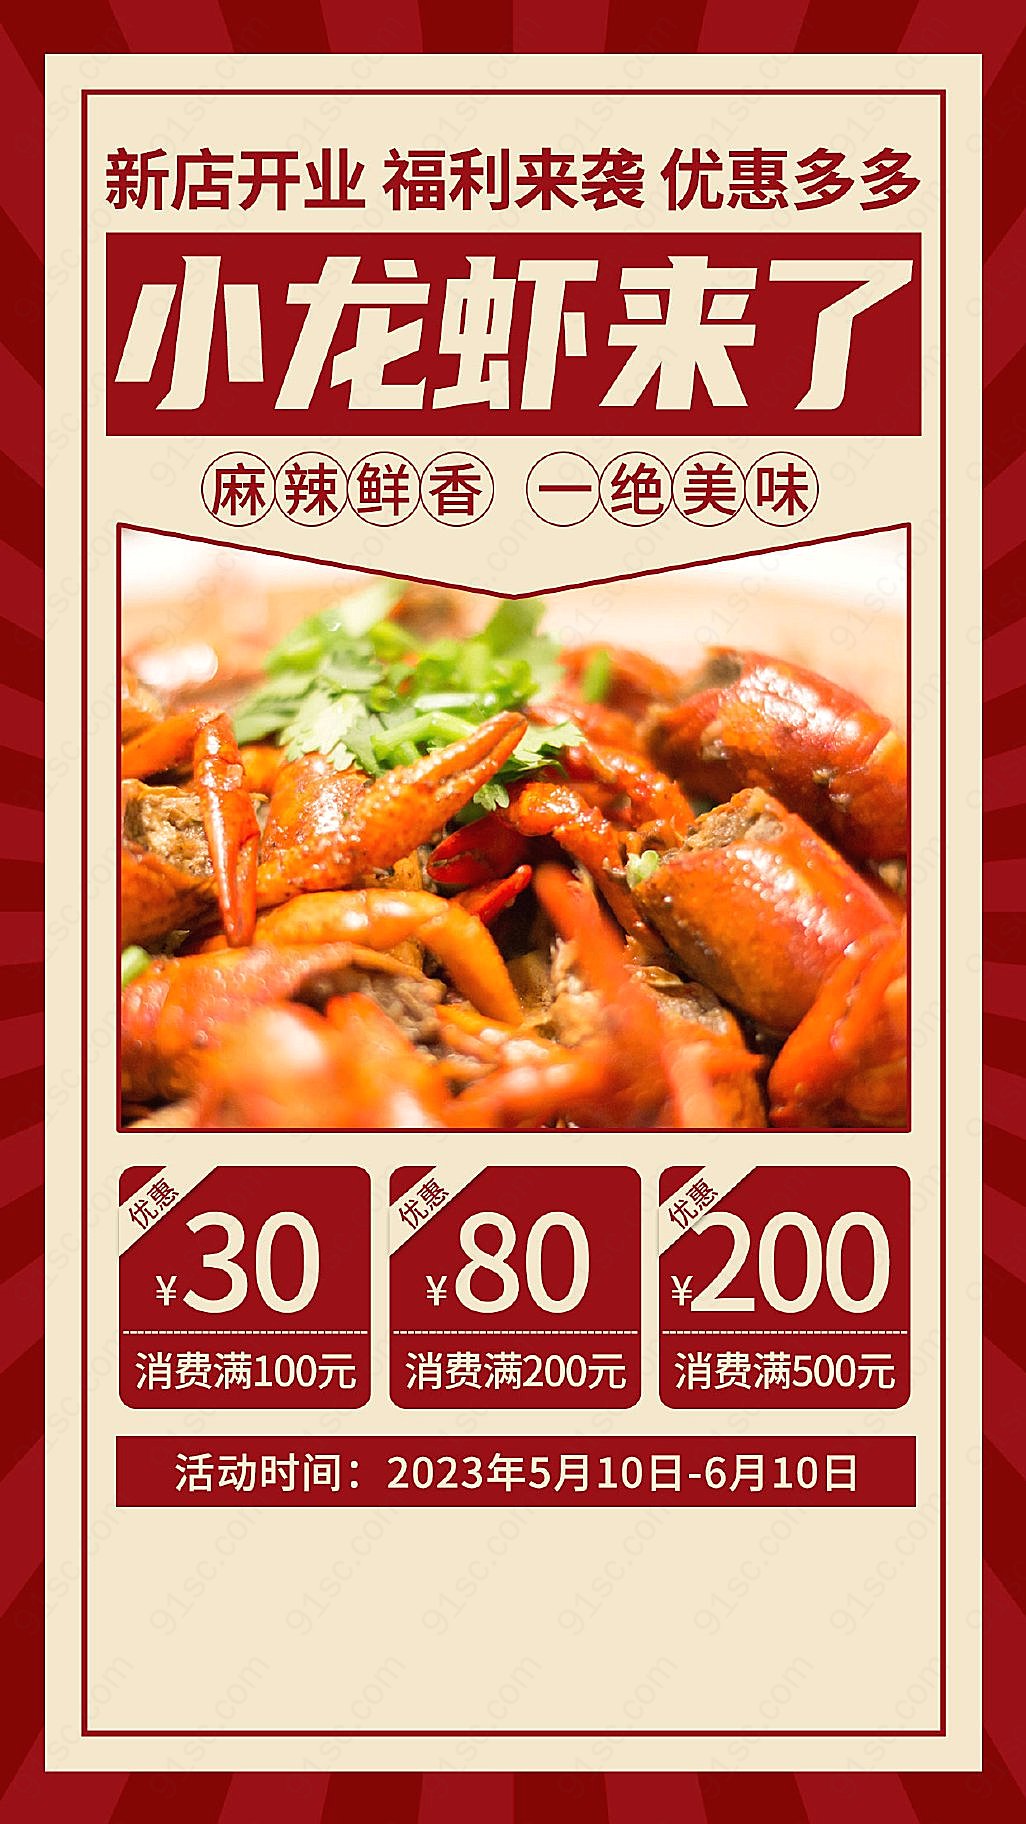 新店开业红色复古风味小龙虾美食促销用手机领取优惠新媒体用图下载